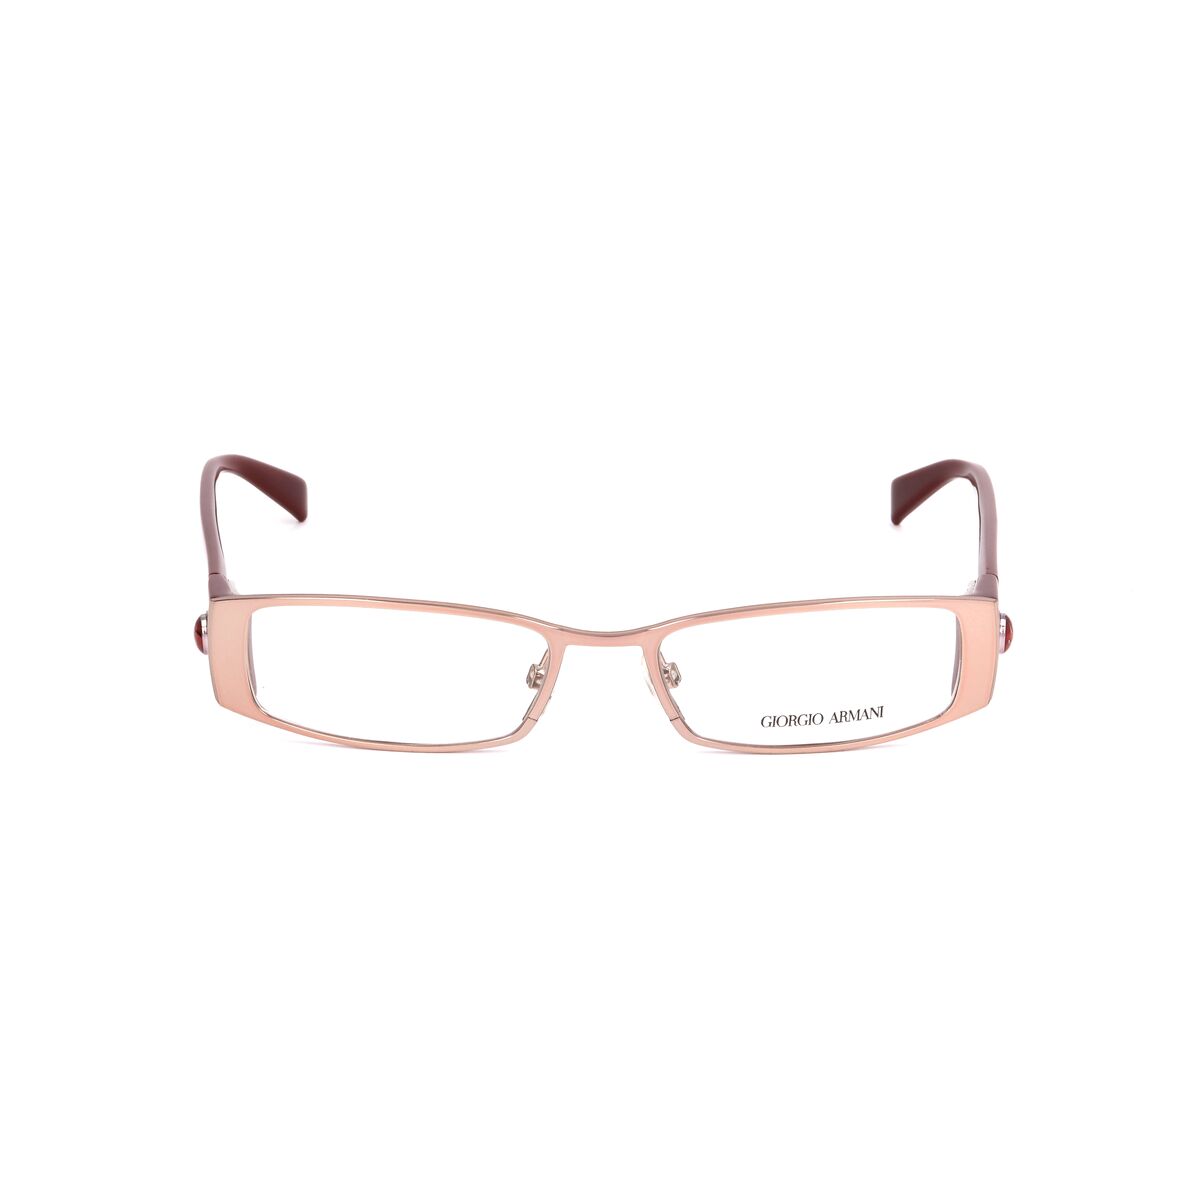 Brillenfassung Armani GA-641-NVS Gold Brille ohne Sehstrke Brillengestell